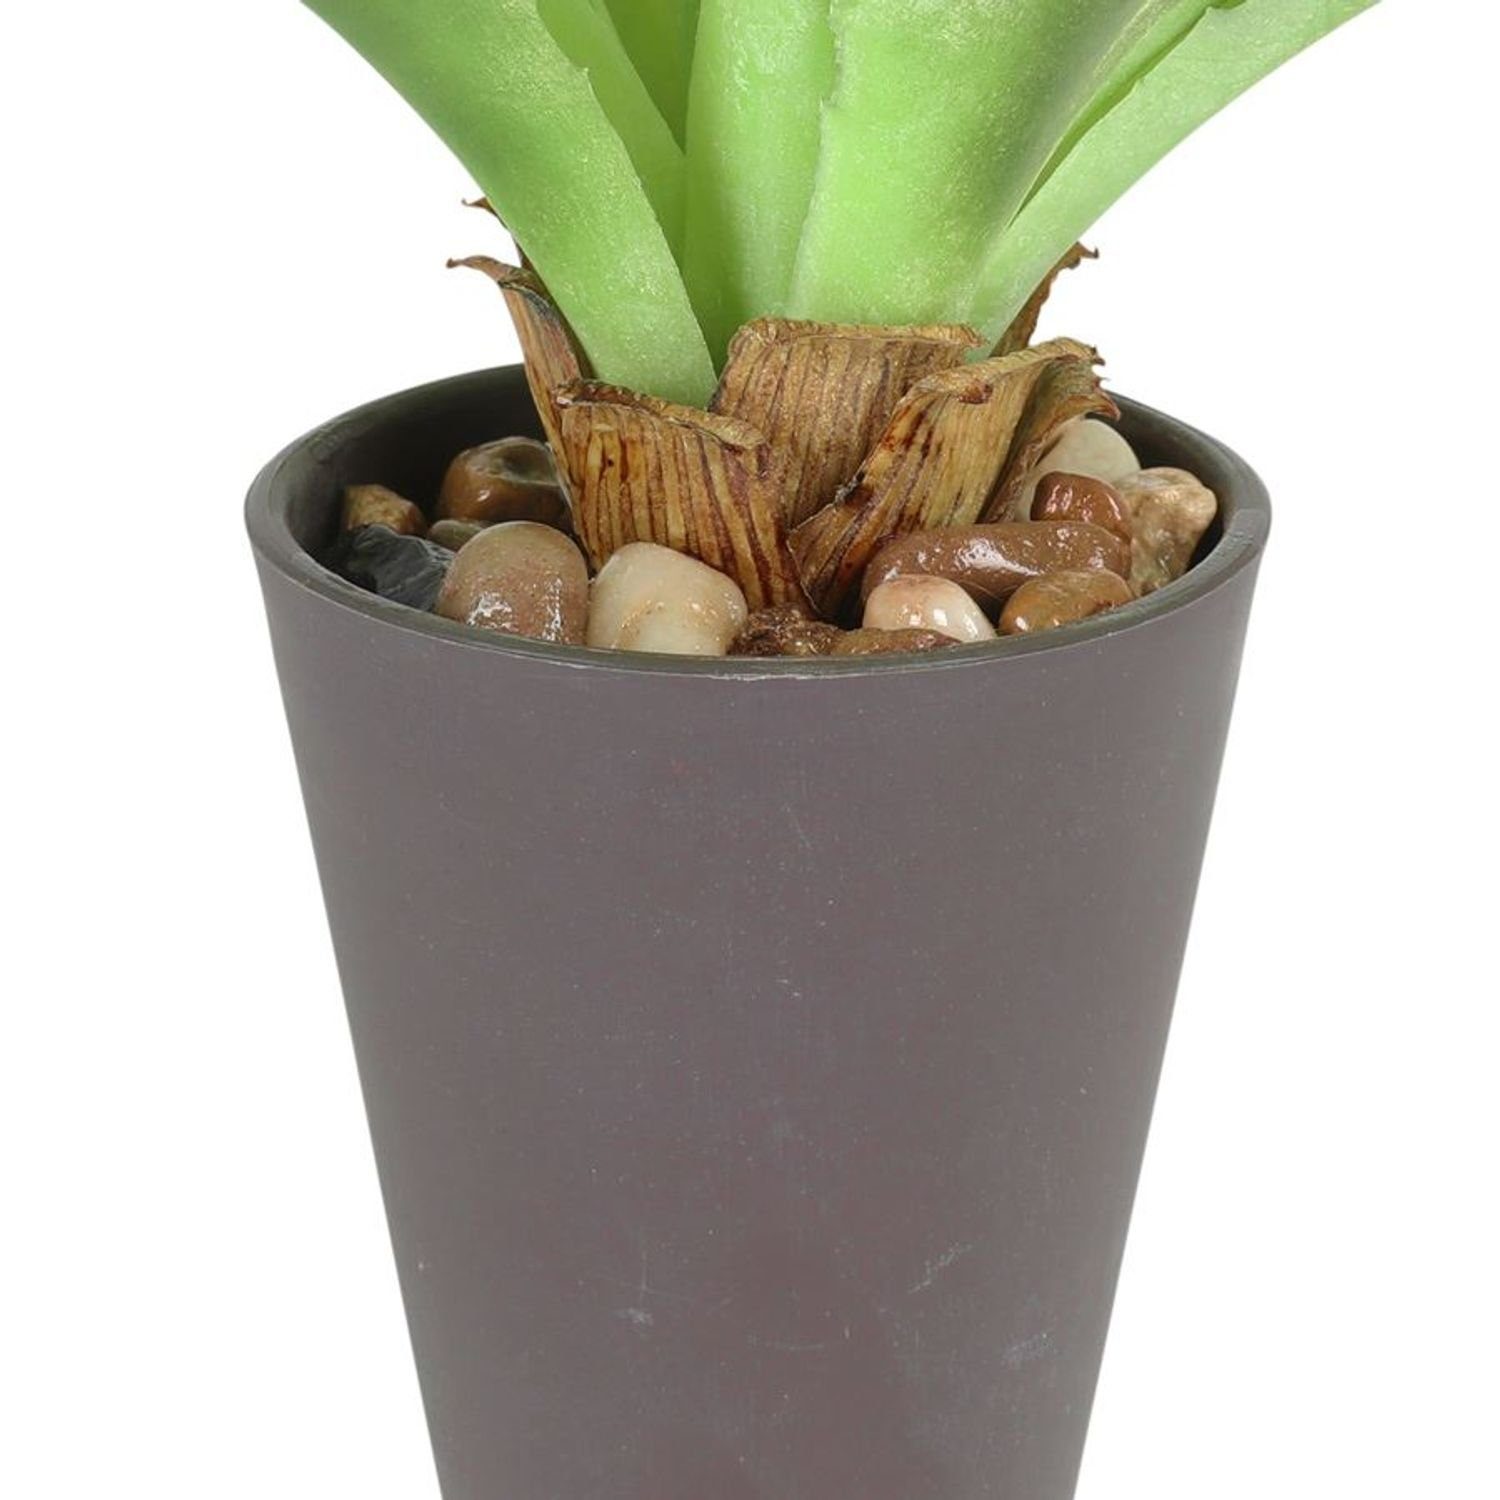 Kunstpflanze Künstliche Aloe Vera im Kunststofftopf Zimmerpflanze, BURI 23cm Kunstpflanze